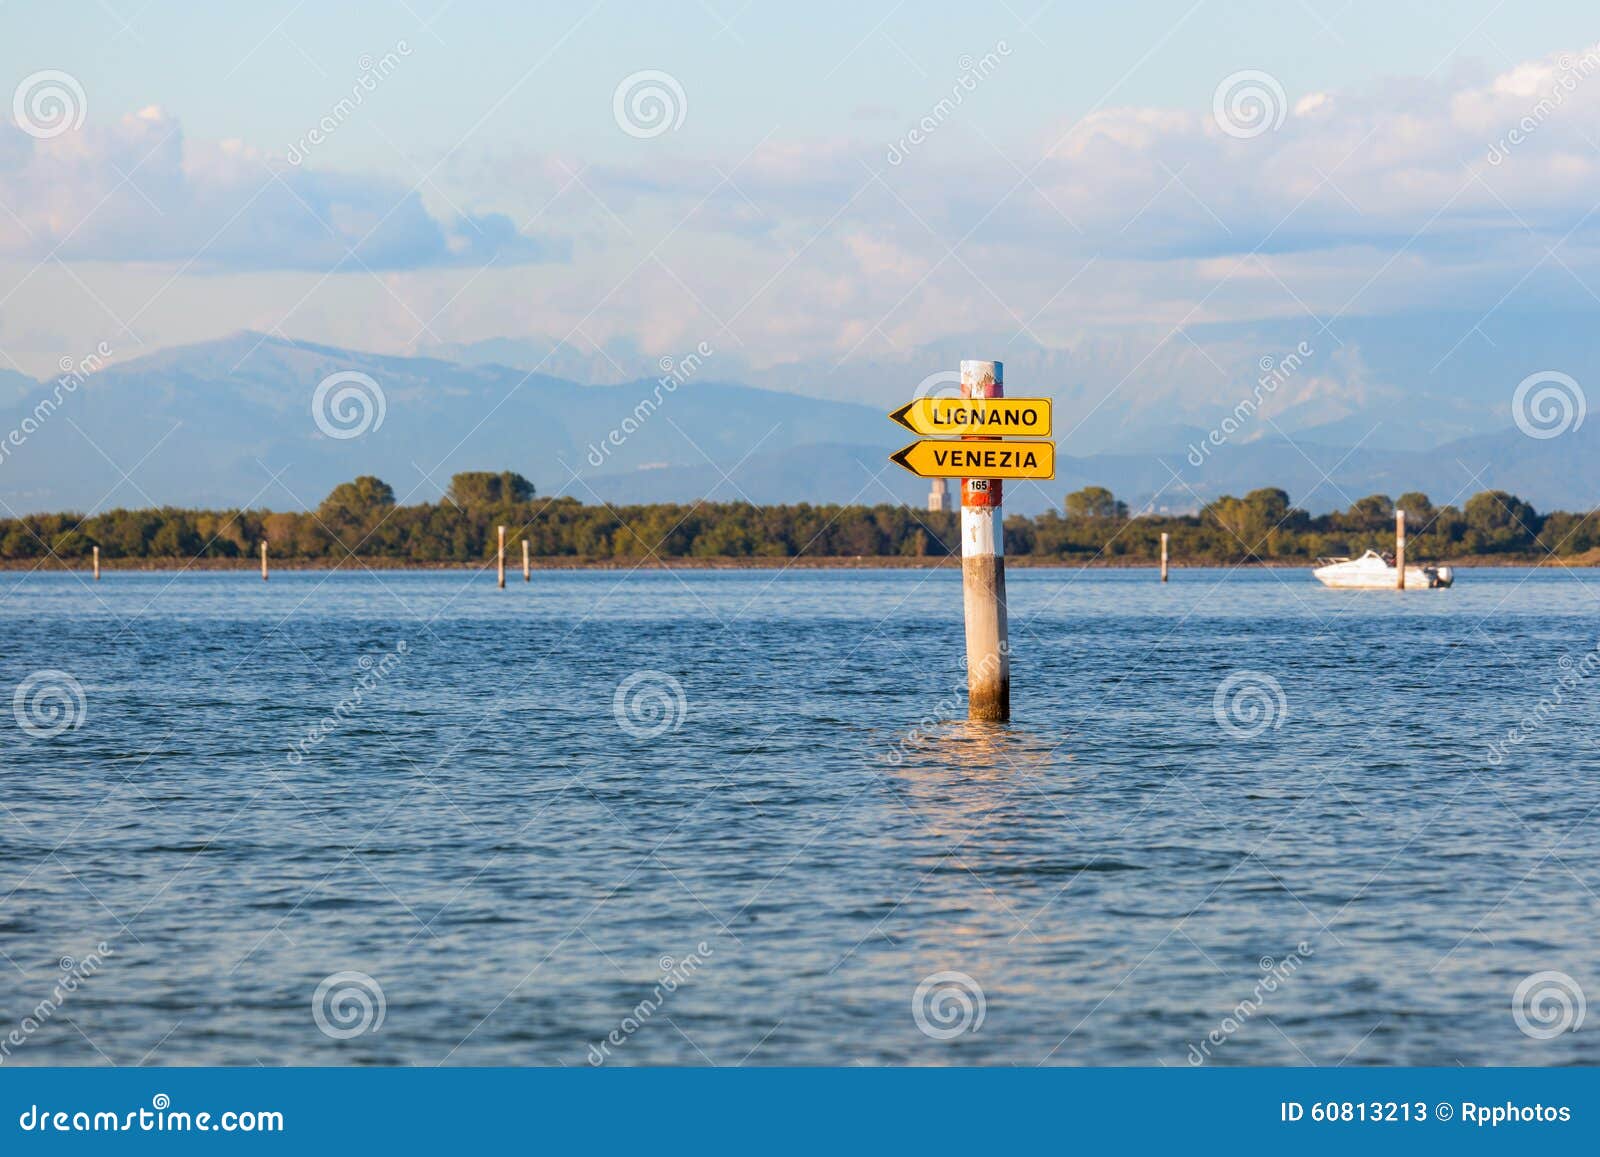 boat sign in the lagoon of grado. friuli venezia giulia, italy